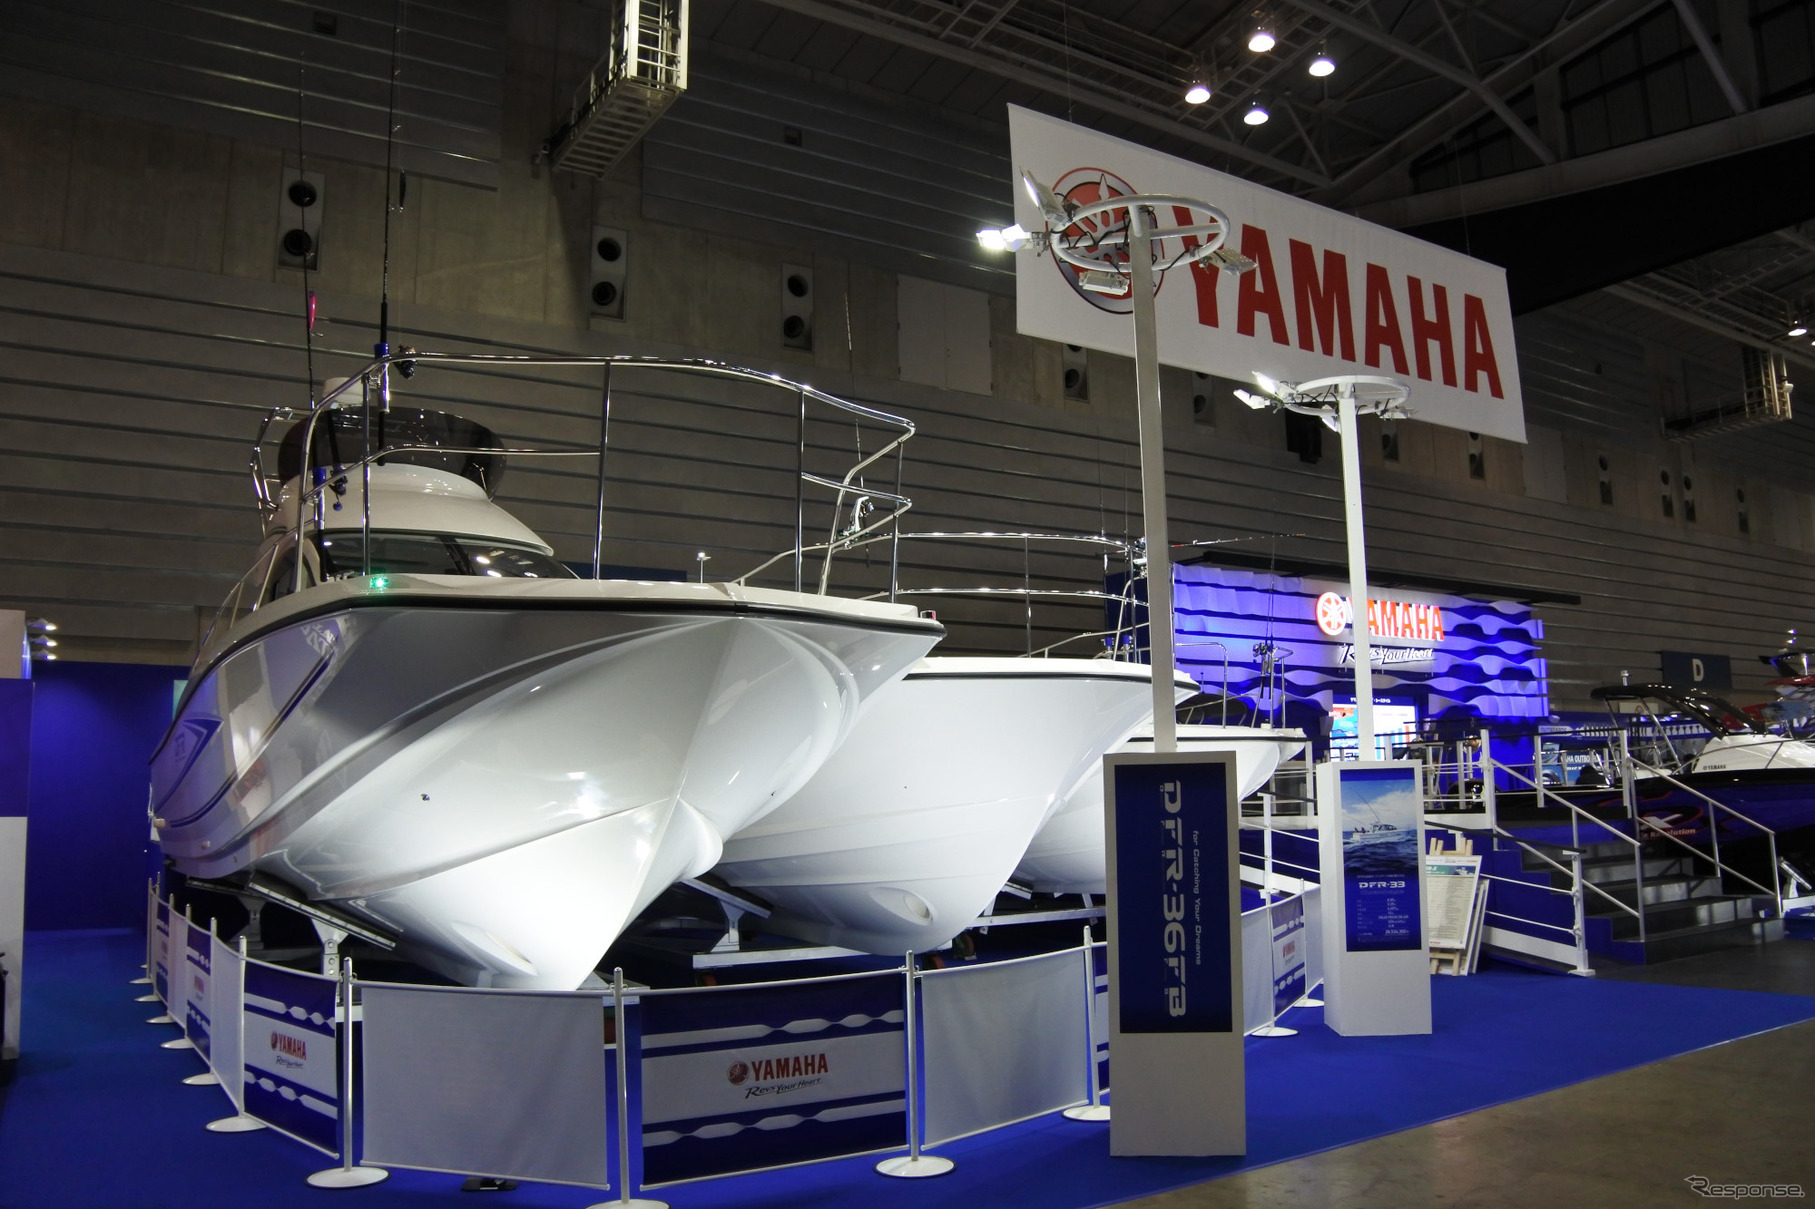 ジャパンインターナショナルボートショー2018 ヤマハ発動機ブース